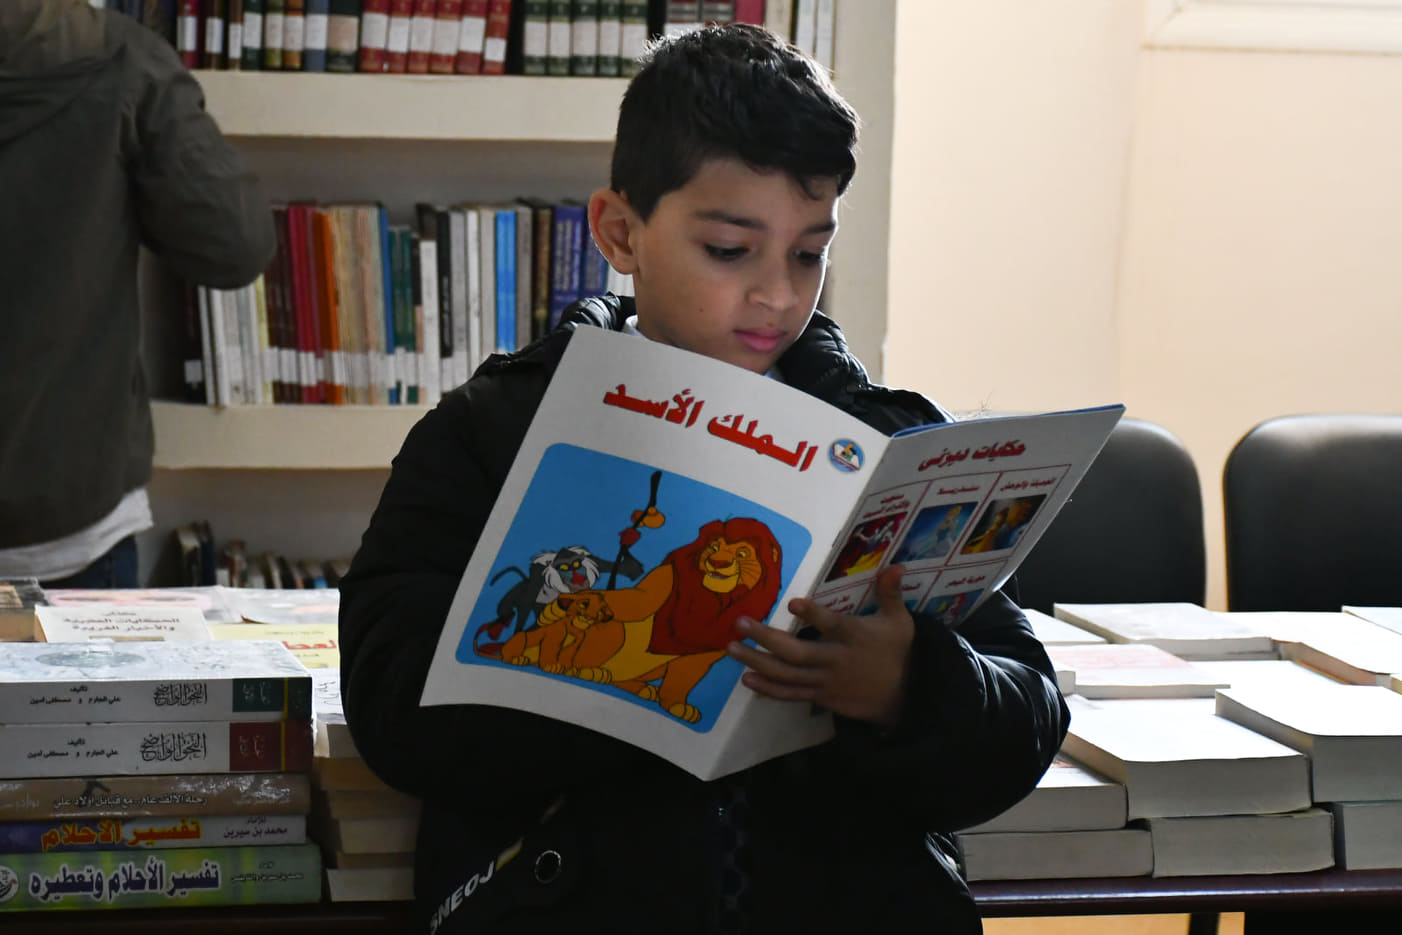 بنغازي| مكتب الثقافة والتنمية المعرفية يُقيم معرض للكتّاب خاص بالأطفال       